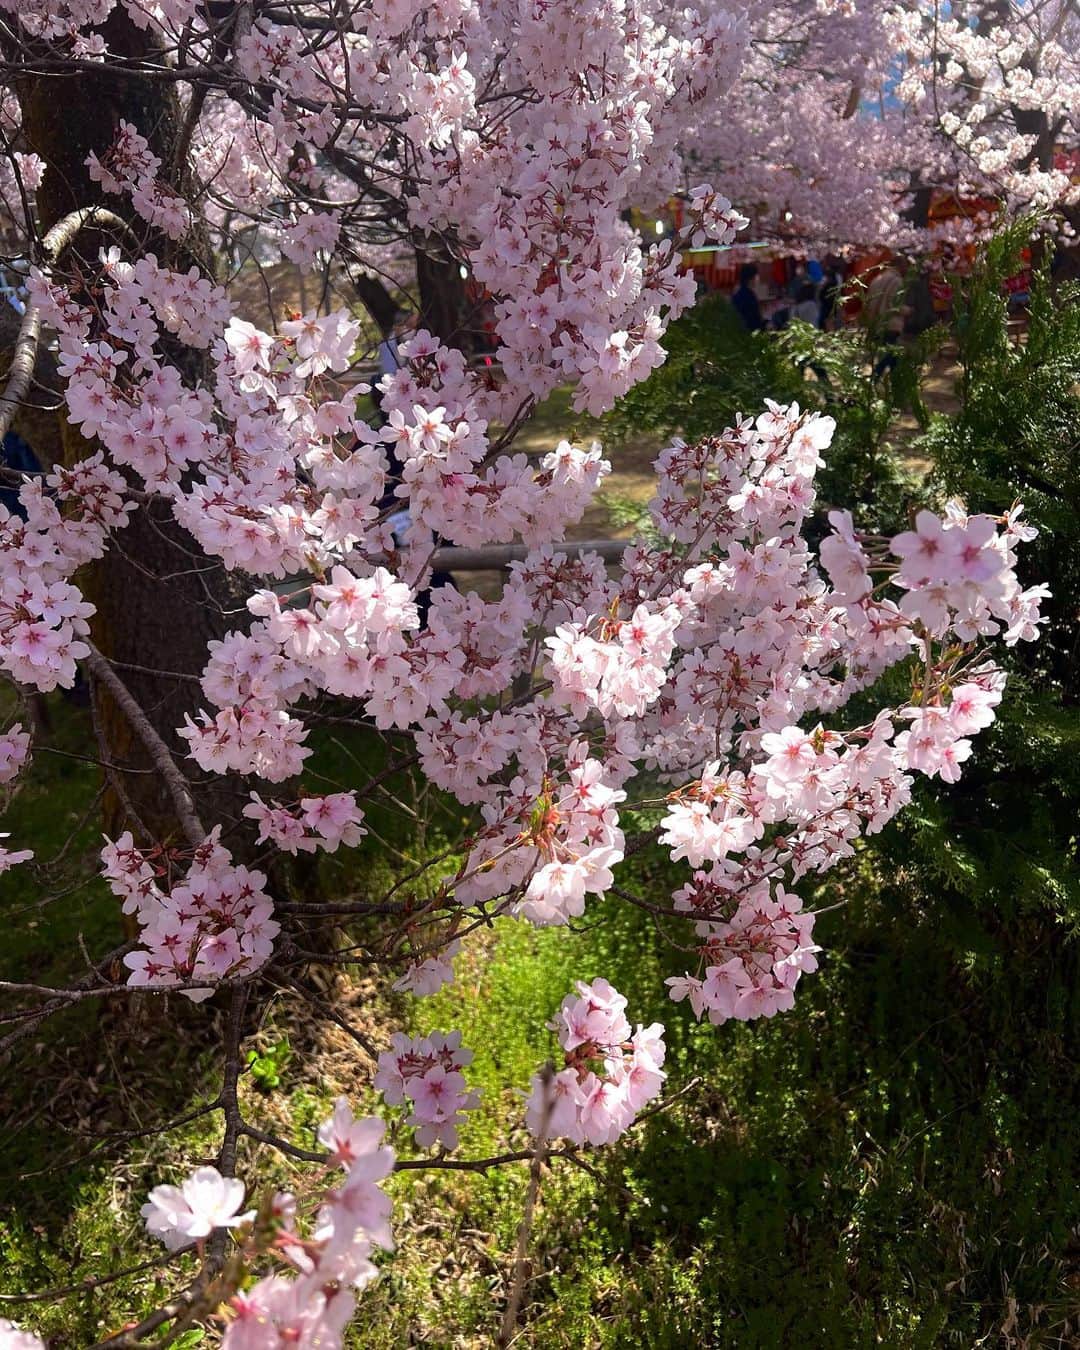 高田有紗のインスタグラム：「肝心の高遠城址公園の桜の写真を載せてないまま日がたってたので、いまさらですが、、ᐡඉ́ ̫ ඉ̀ᐡ  圧巻の桜はもちろんなのですが、、  鳥のさえずりがとても癒される空間でした🥰 3つ目の動画で聞こえますかね？·͜· ♡  #お花見 #桜 #長野 #高遠城址公園 #高遠の桜 #高遠 #伊那市 #長野大好き #デートスポット  #穴場 #映え #インスタ映え #桜スポット #日本さくらの会 #さくらの名所100選  #タカトオコヒガンザクラ #天下第一の桜  #日本三大桜の名所 #japansakura #sakura #japan #japantravel #japanculture #japanphoto #artstagram  #beautifulview」